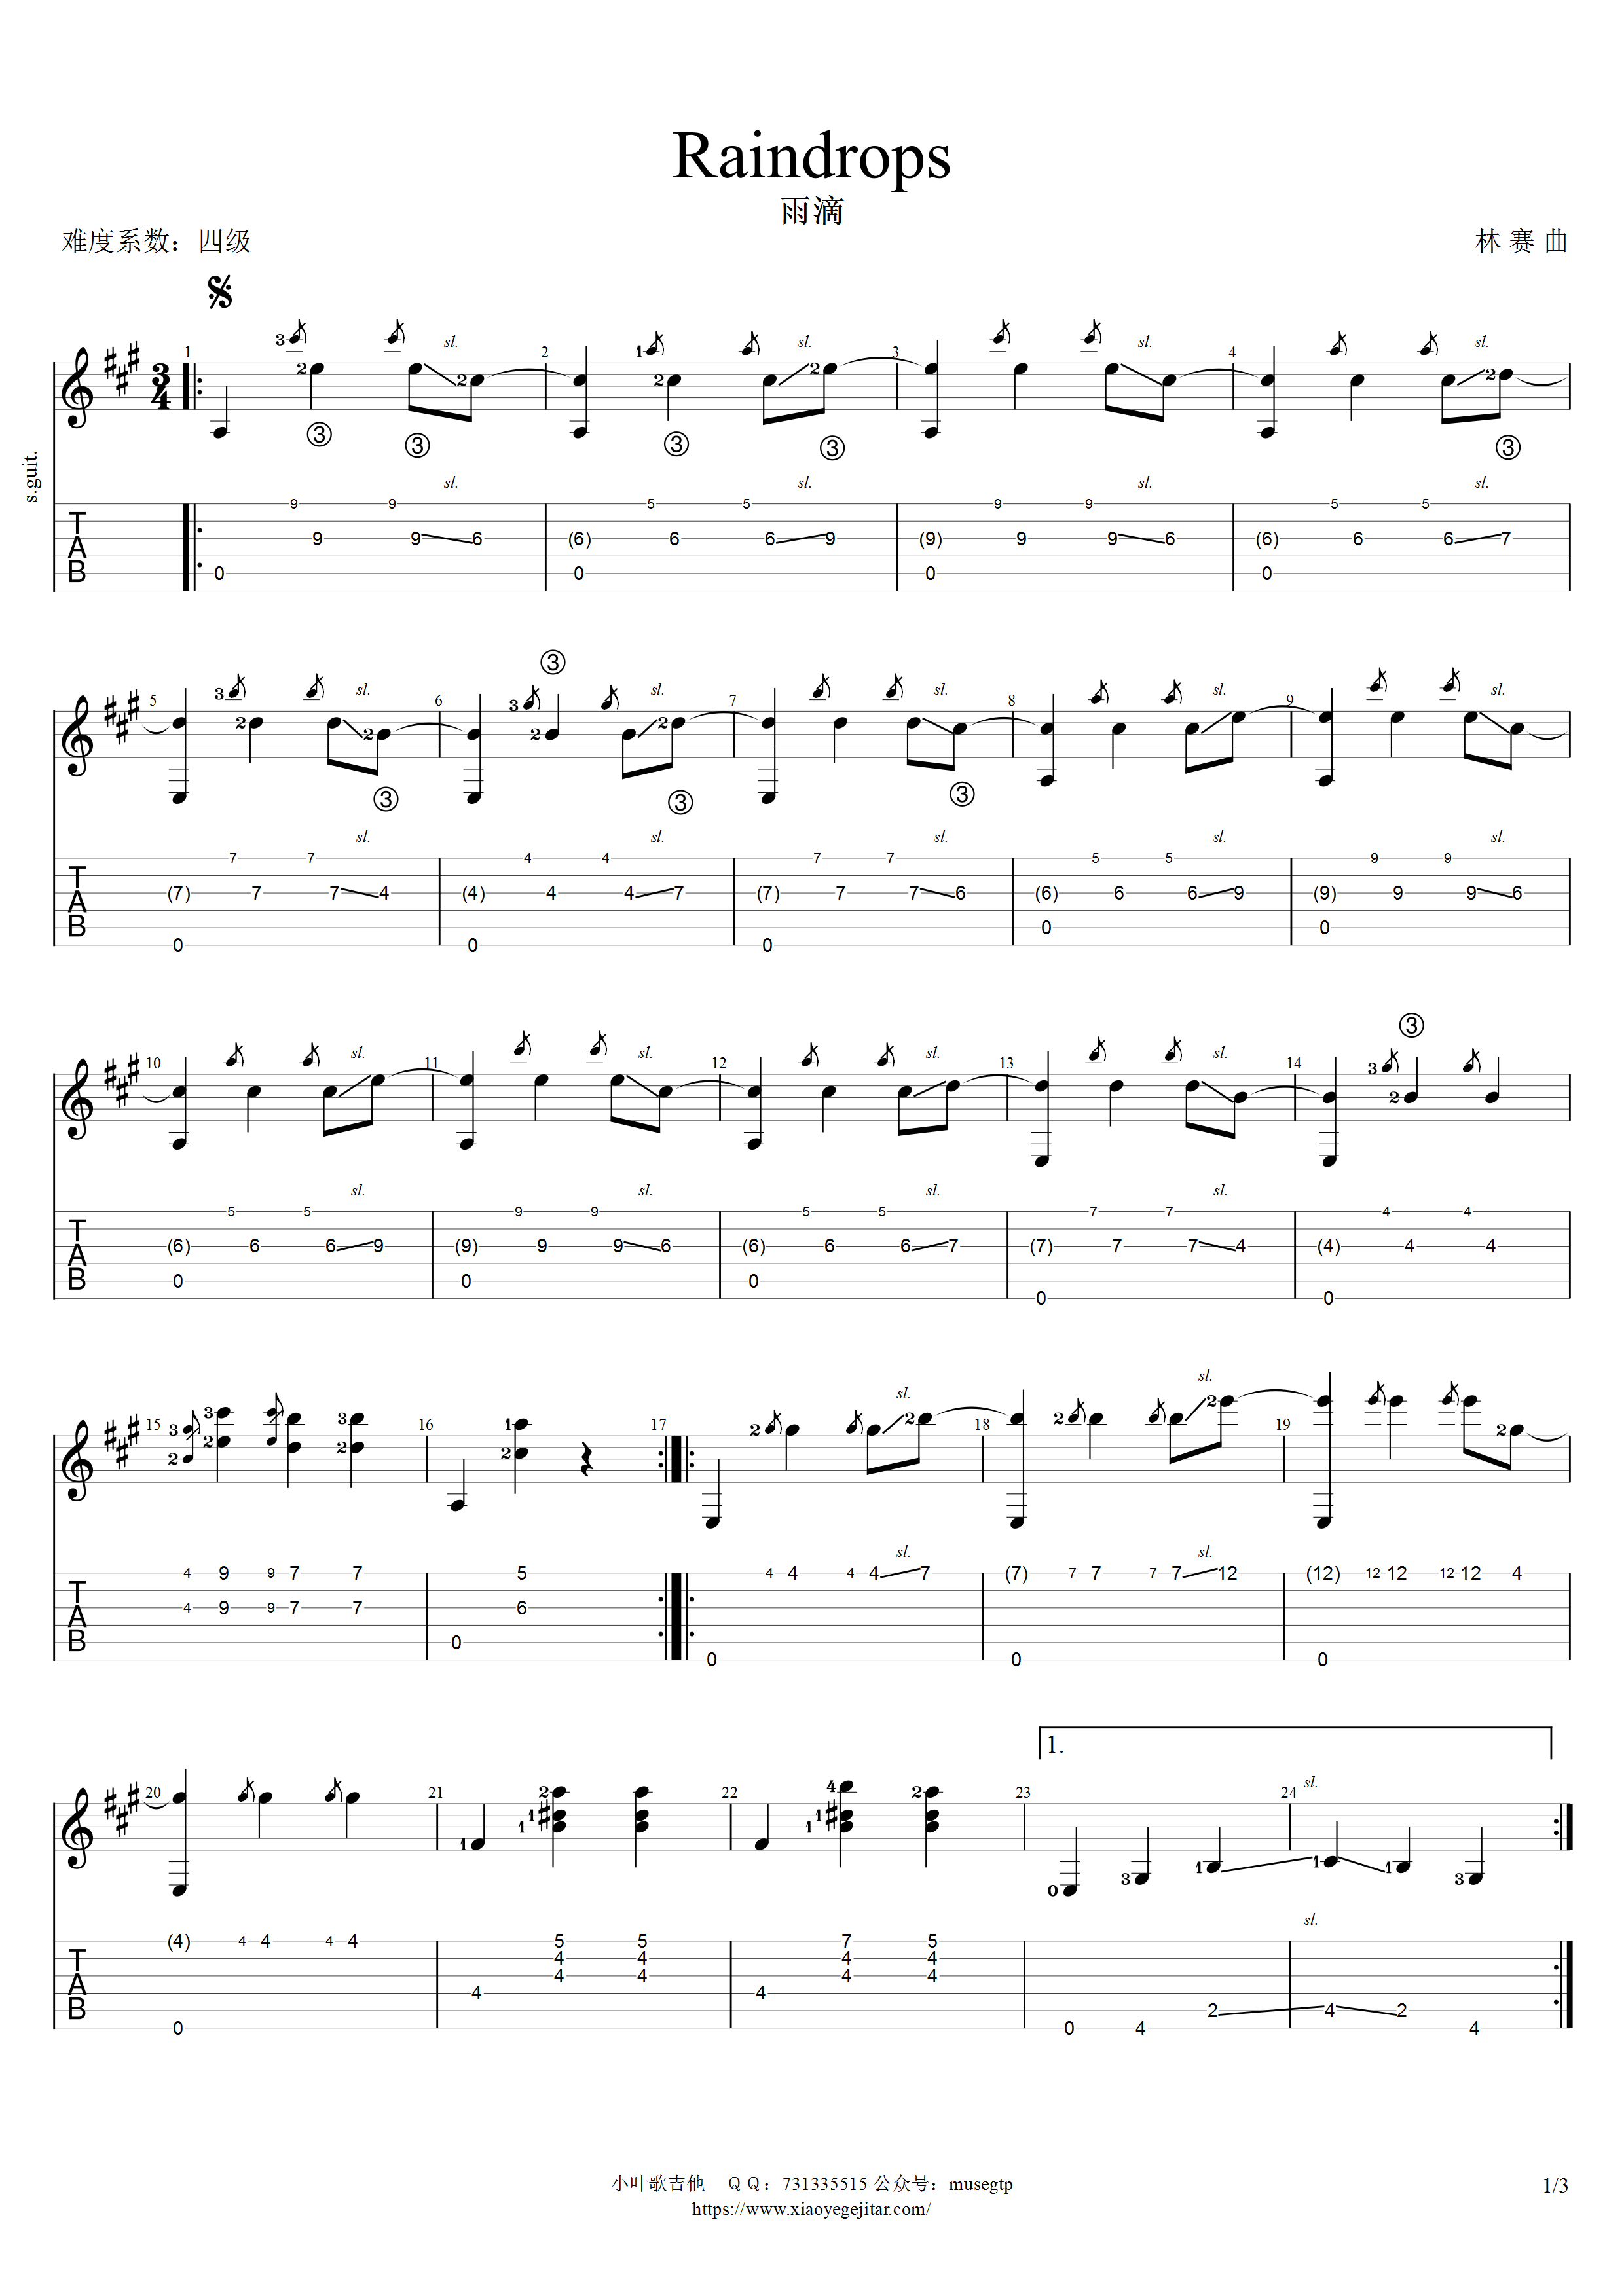 古典吉他名曲《雨滴》全曲音名唱名和声分析，请带耳机观看，建议收藏_哔哩哔哩_bilibili